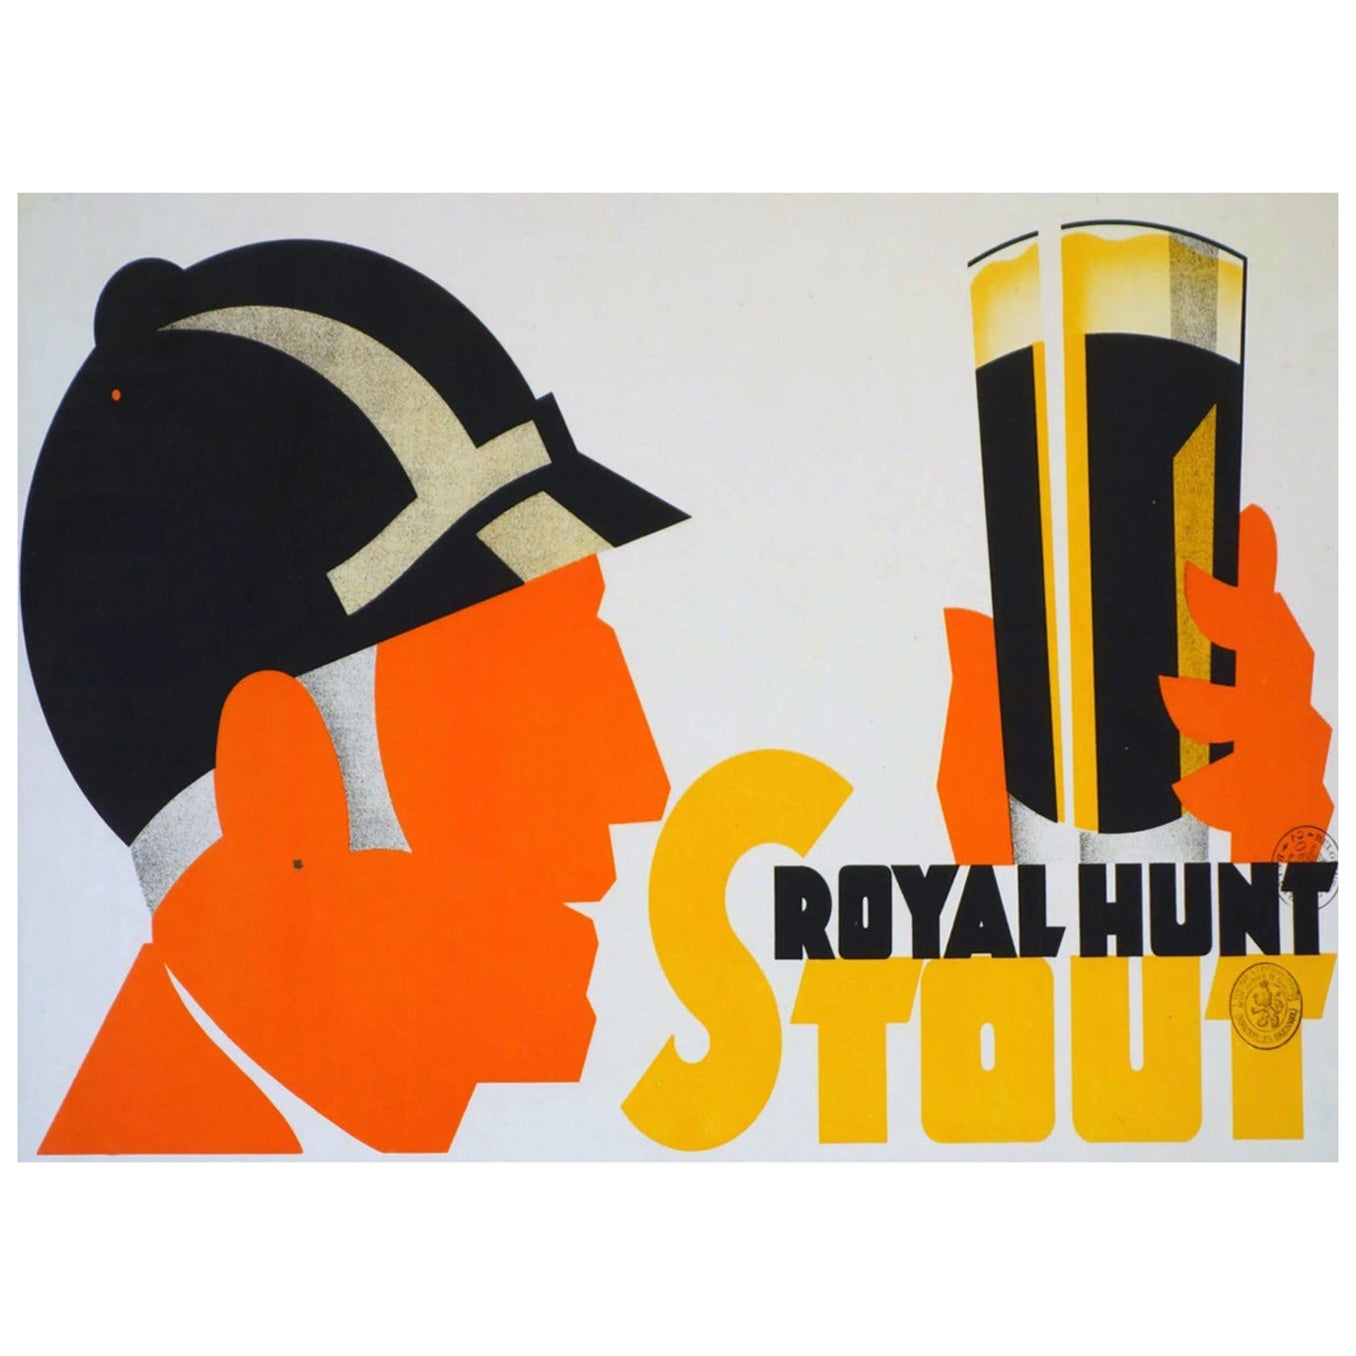 1930 Royal Hunt Stout Original Vintage Poster For Sale